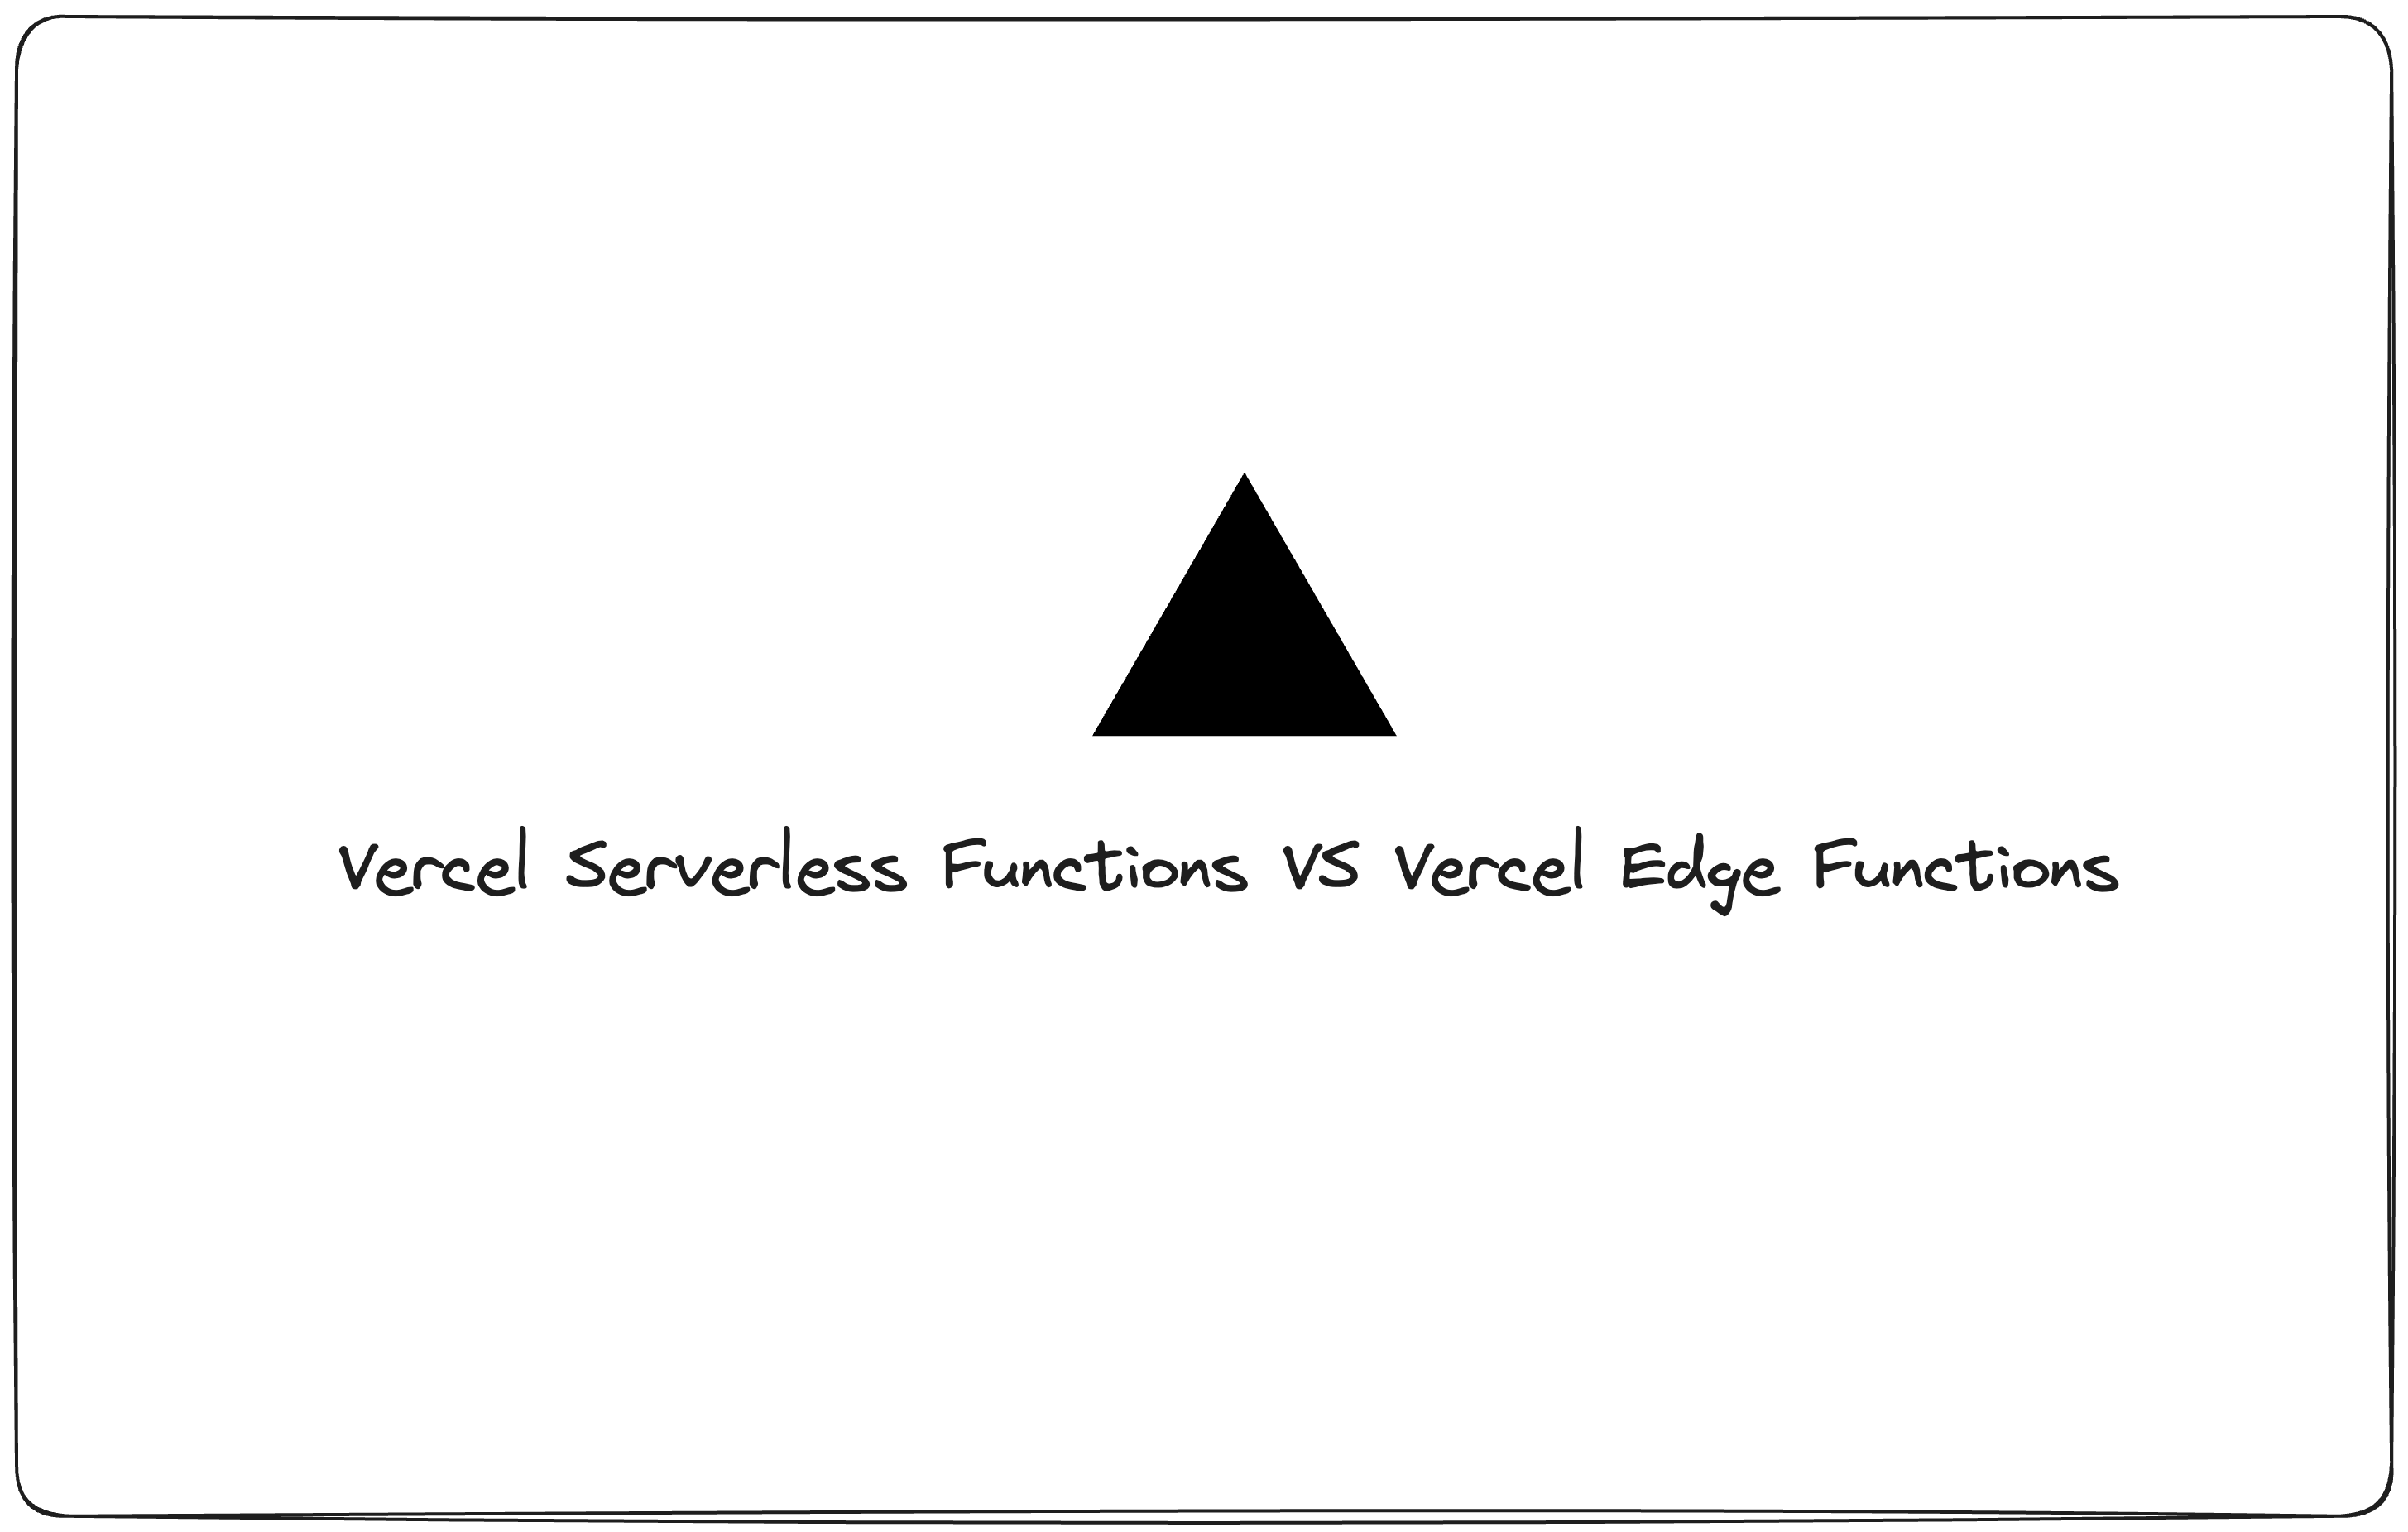 Monitoring latency: Vercel Serverless Function vs Vercel Edge Function